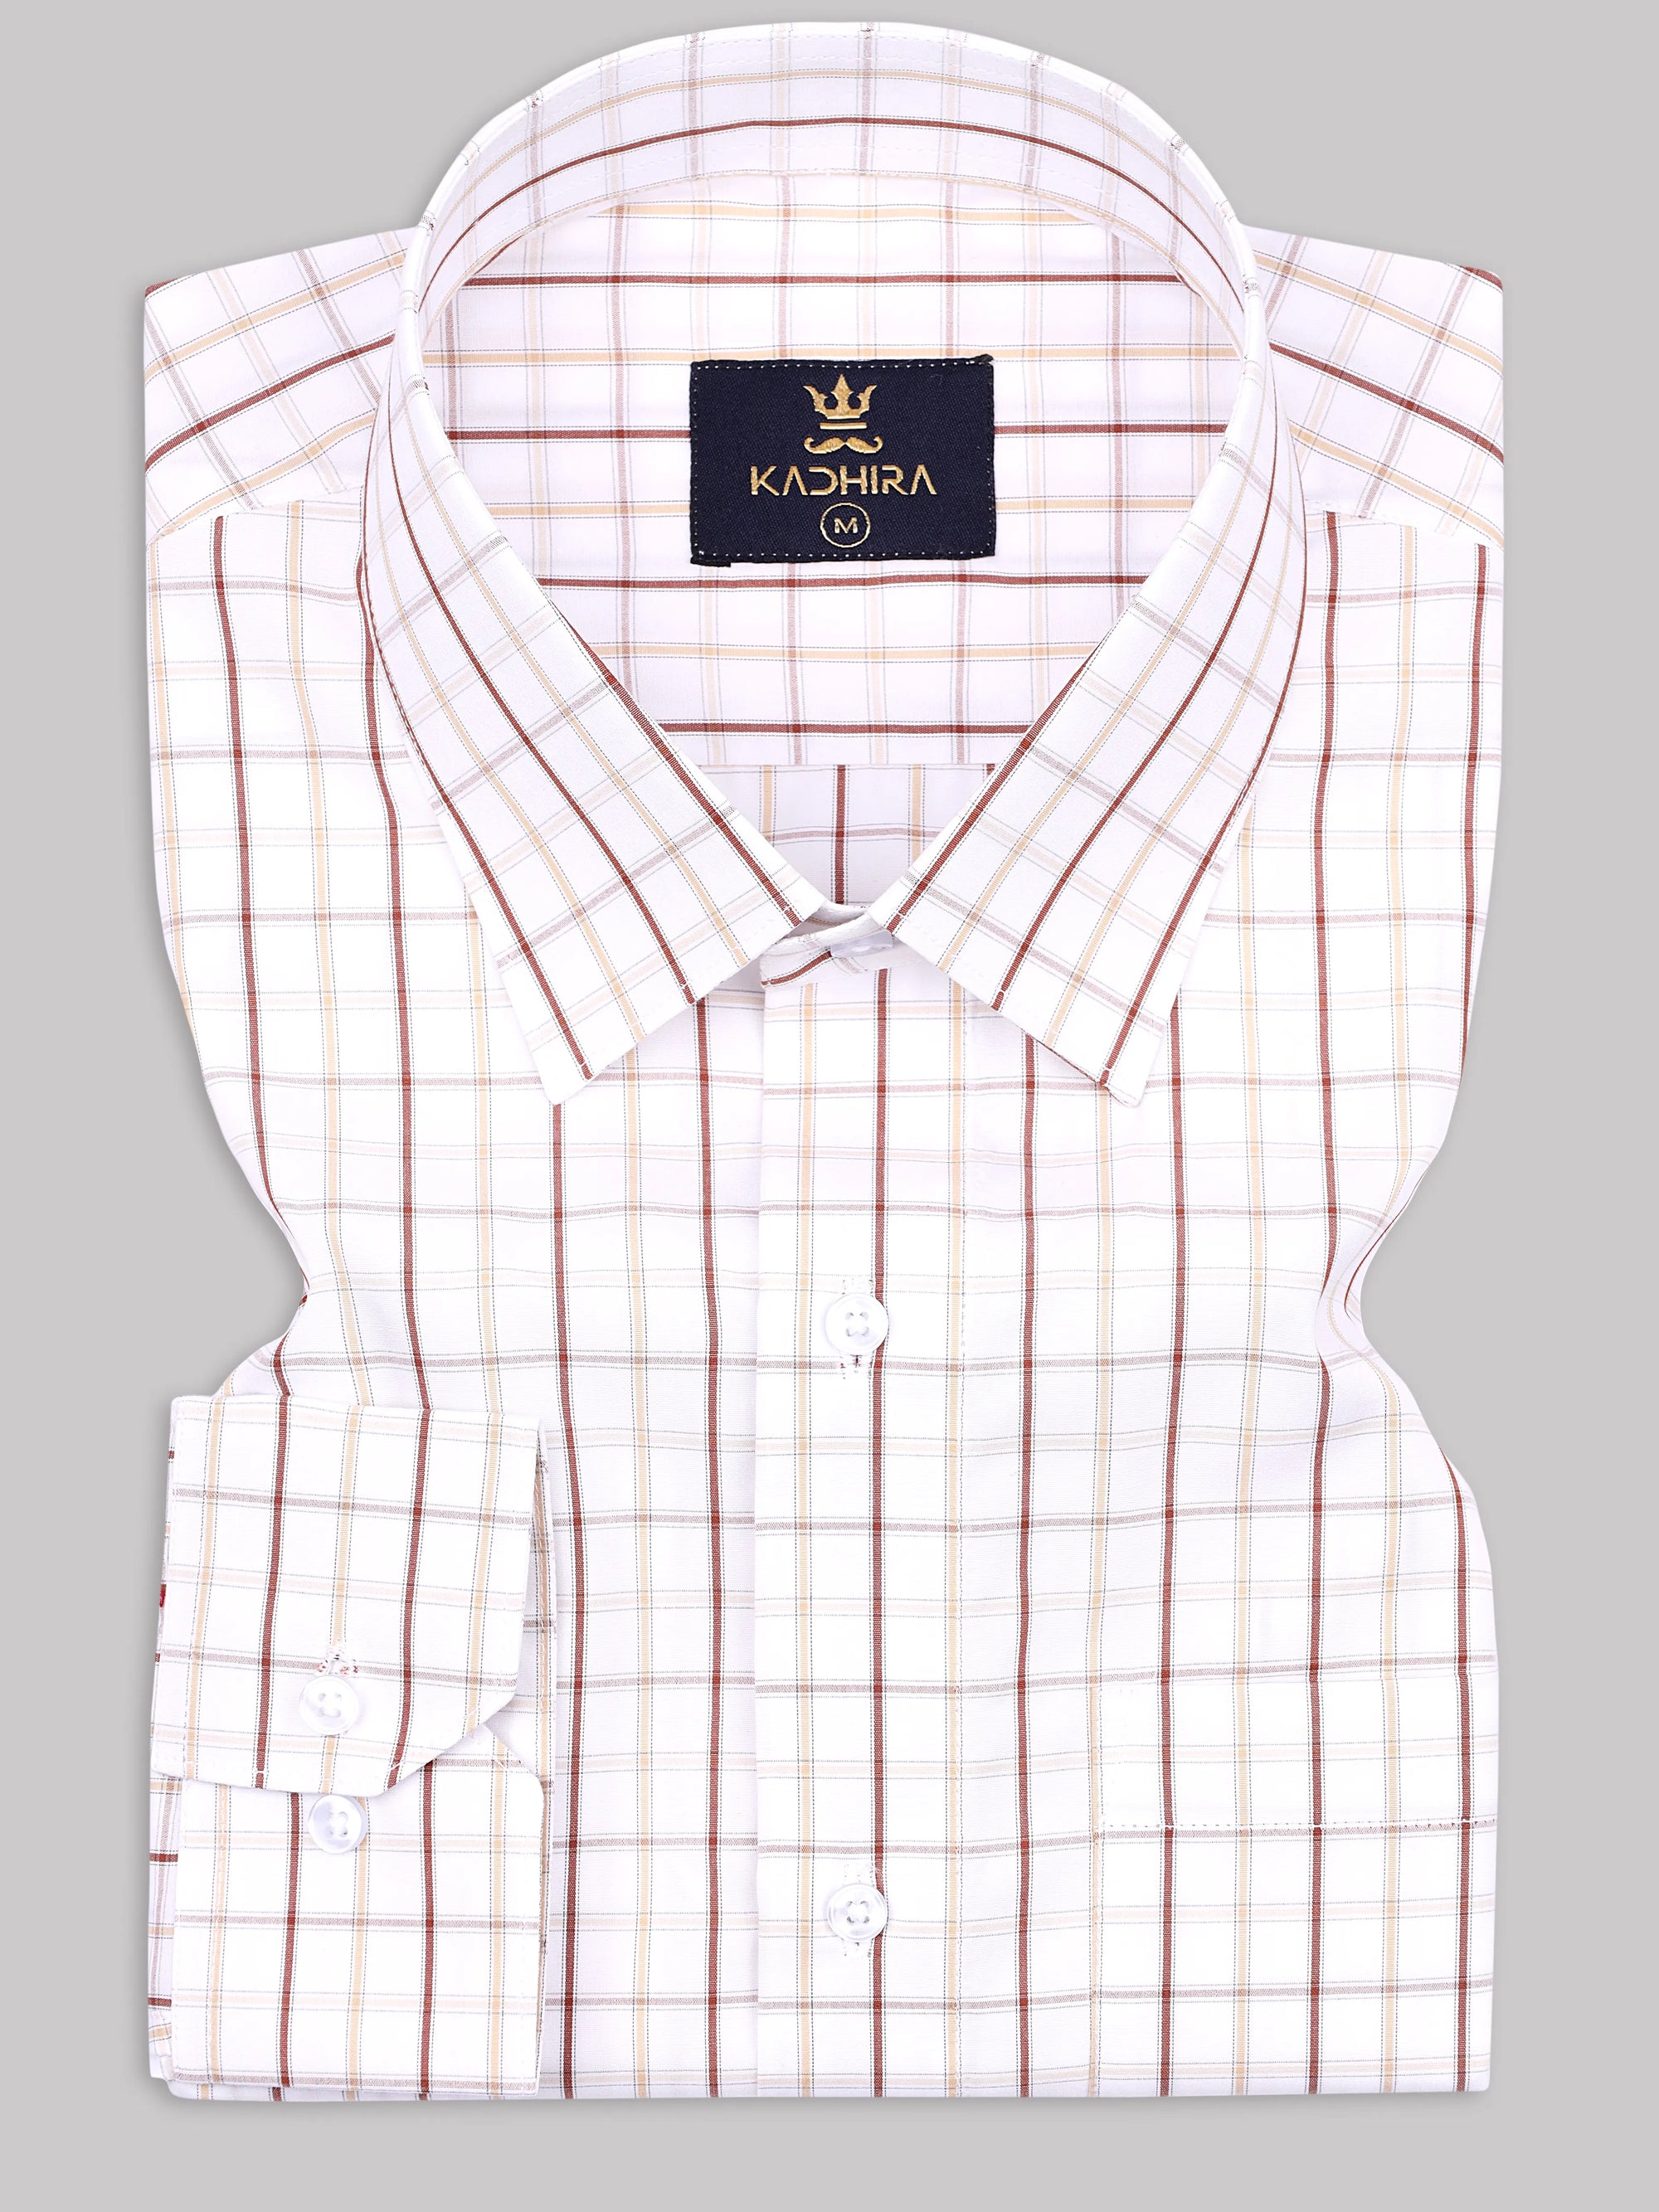 Royal White With Muted Yellow Windowpane Checkered Premium Cotton Shirt